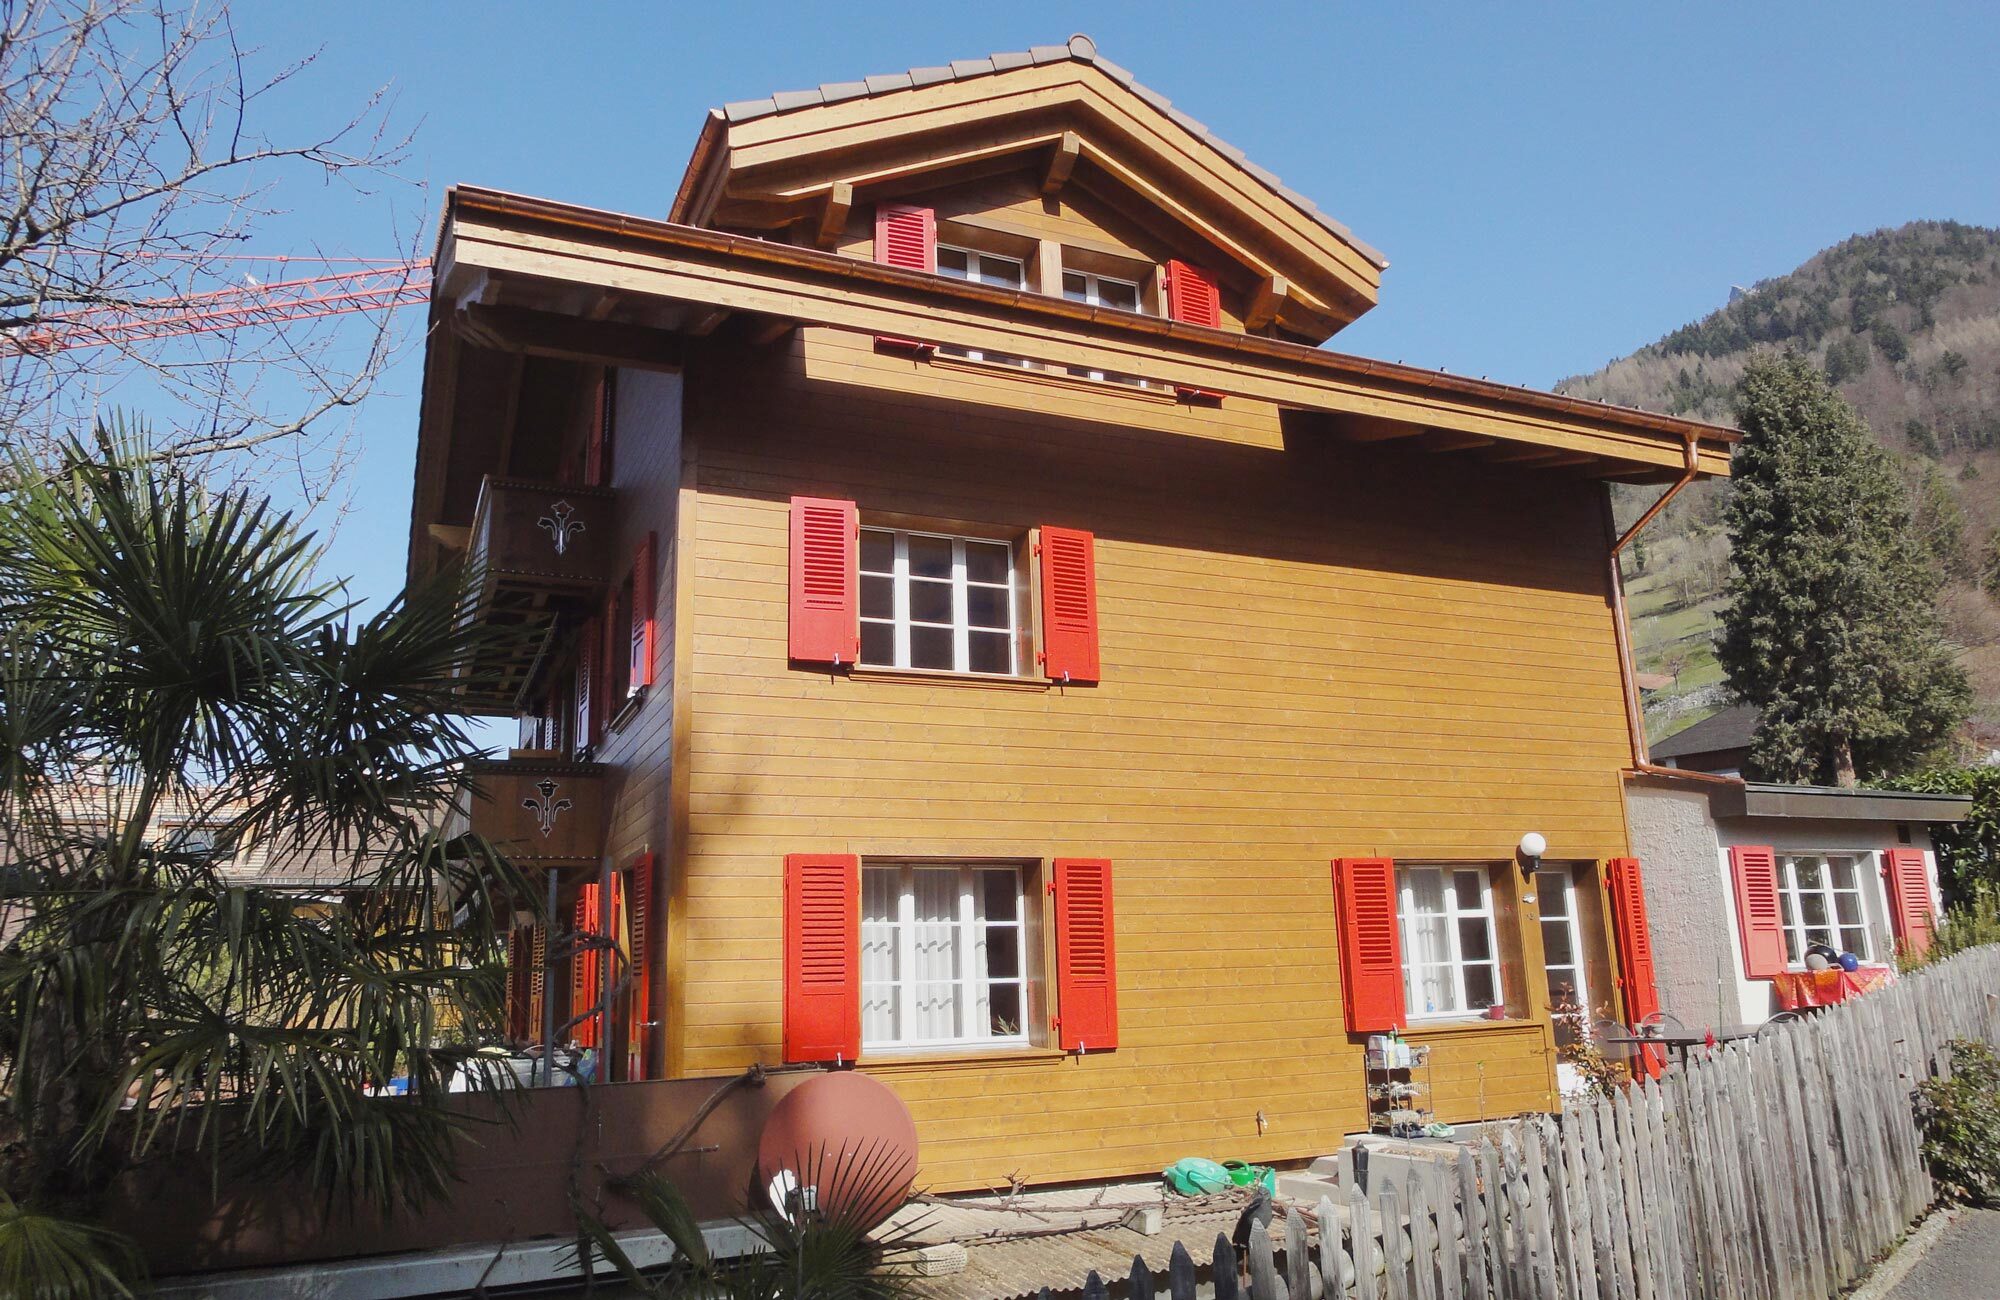 Chalet mit gestrichener Fassade